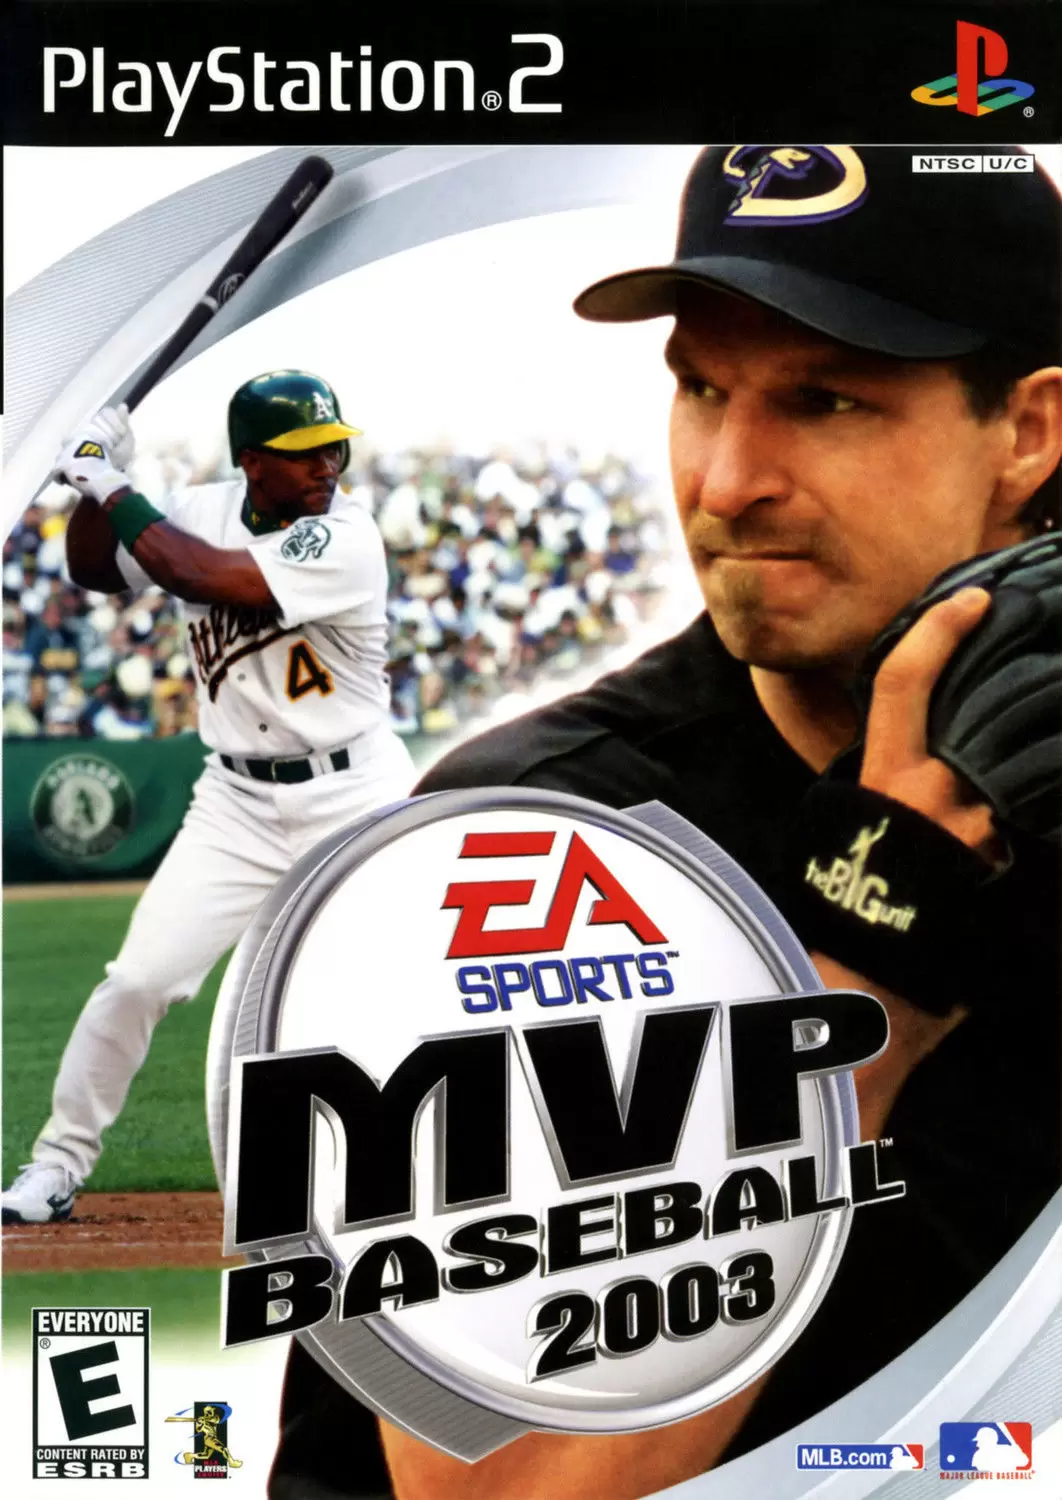 PS2 Games - MVP Baseball 2003